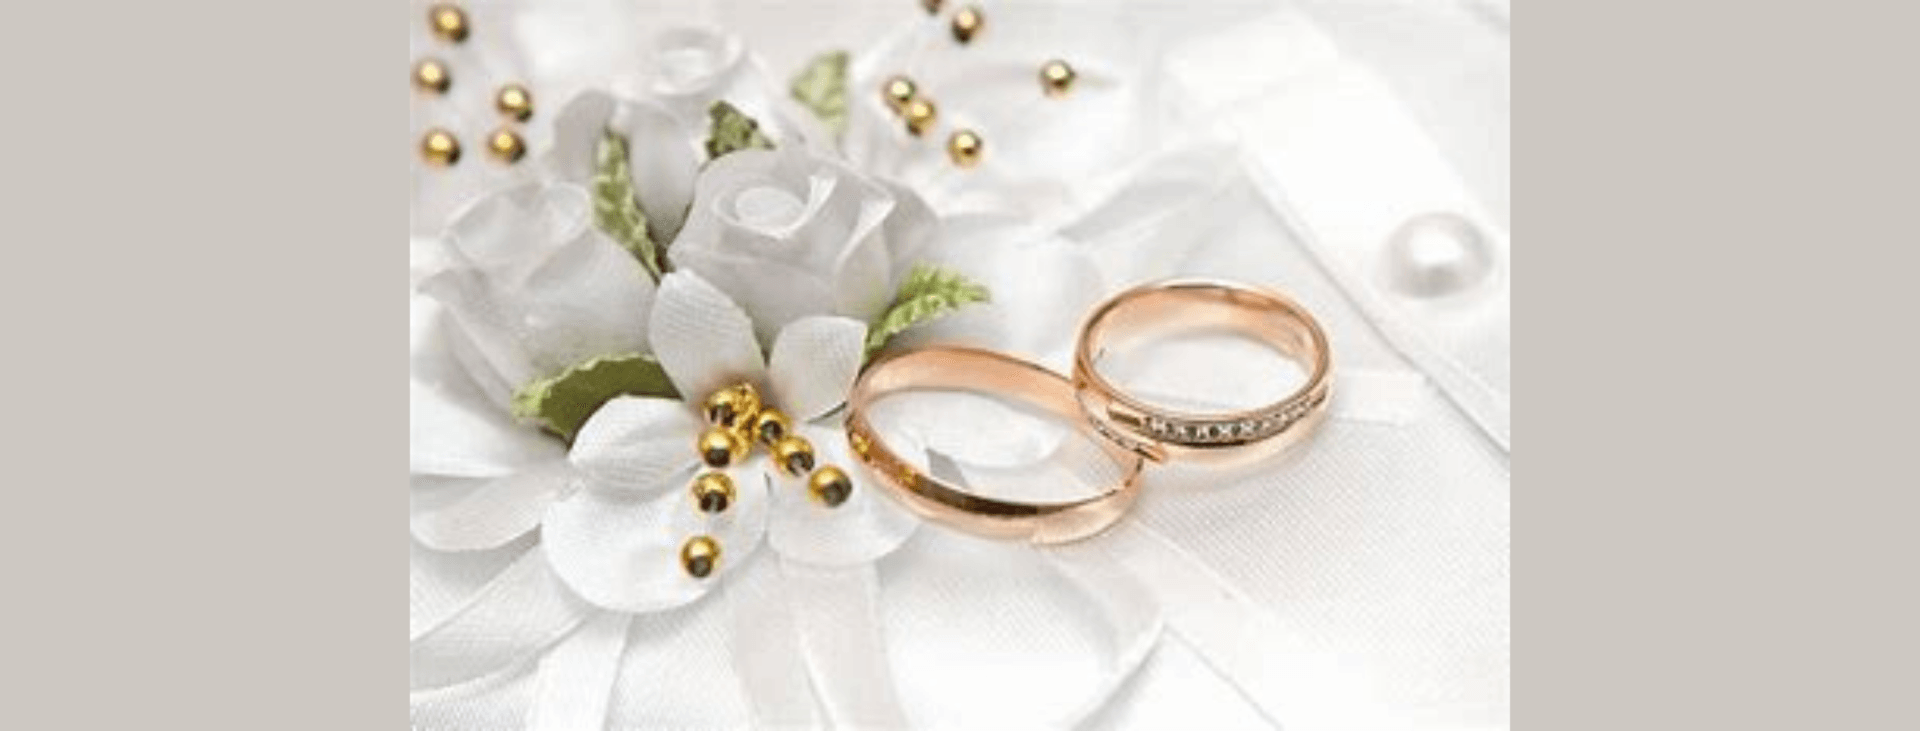 rose gold wedding rings